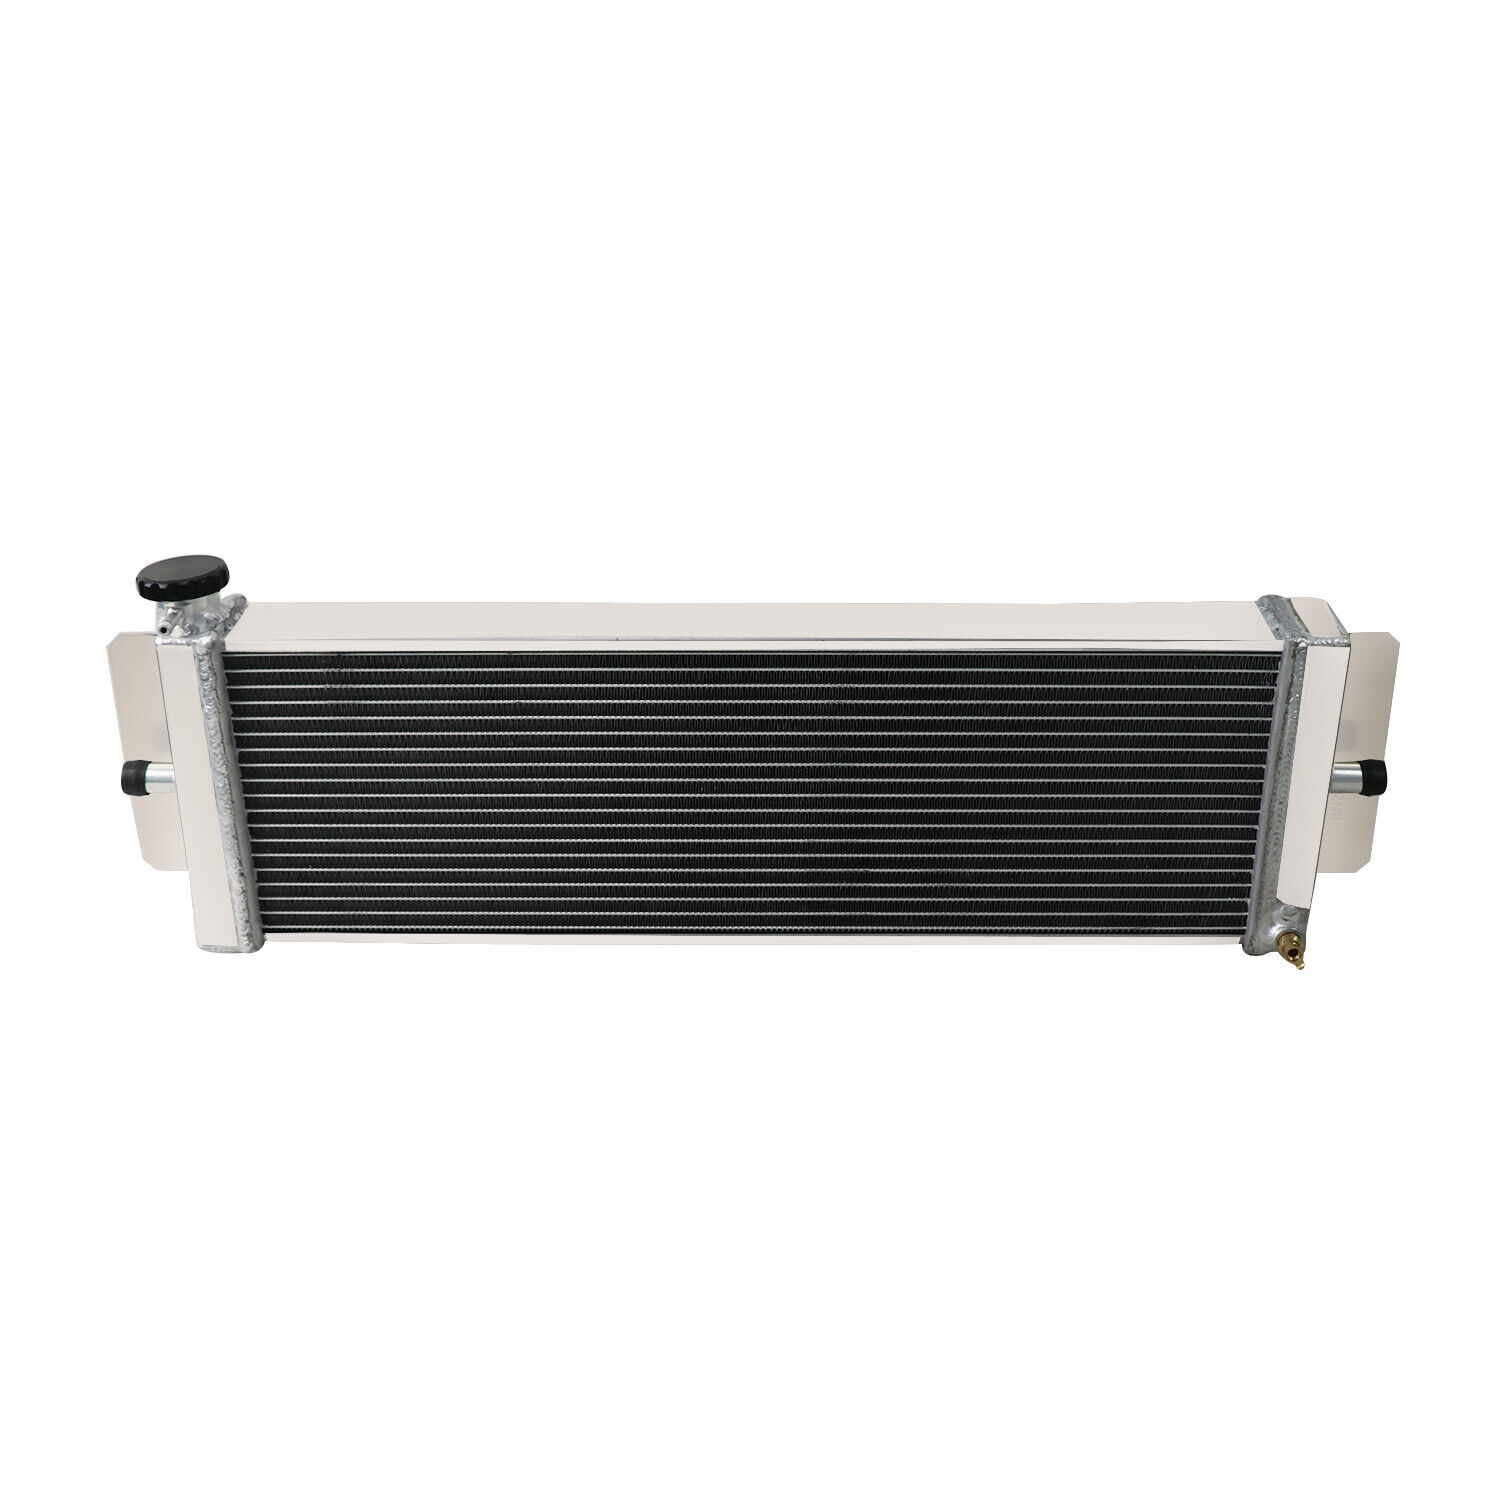 Aluminum Air to Water Intercooler Liquid Heat Exchanger Radiator